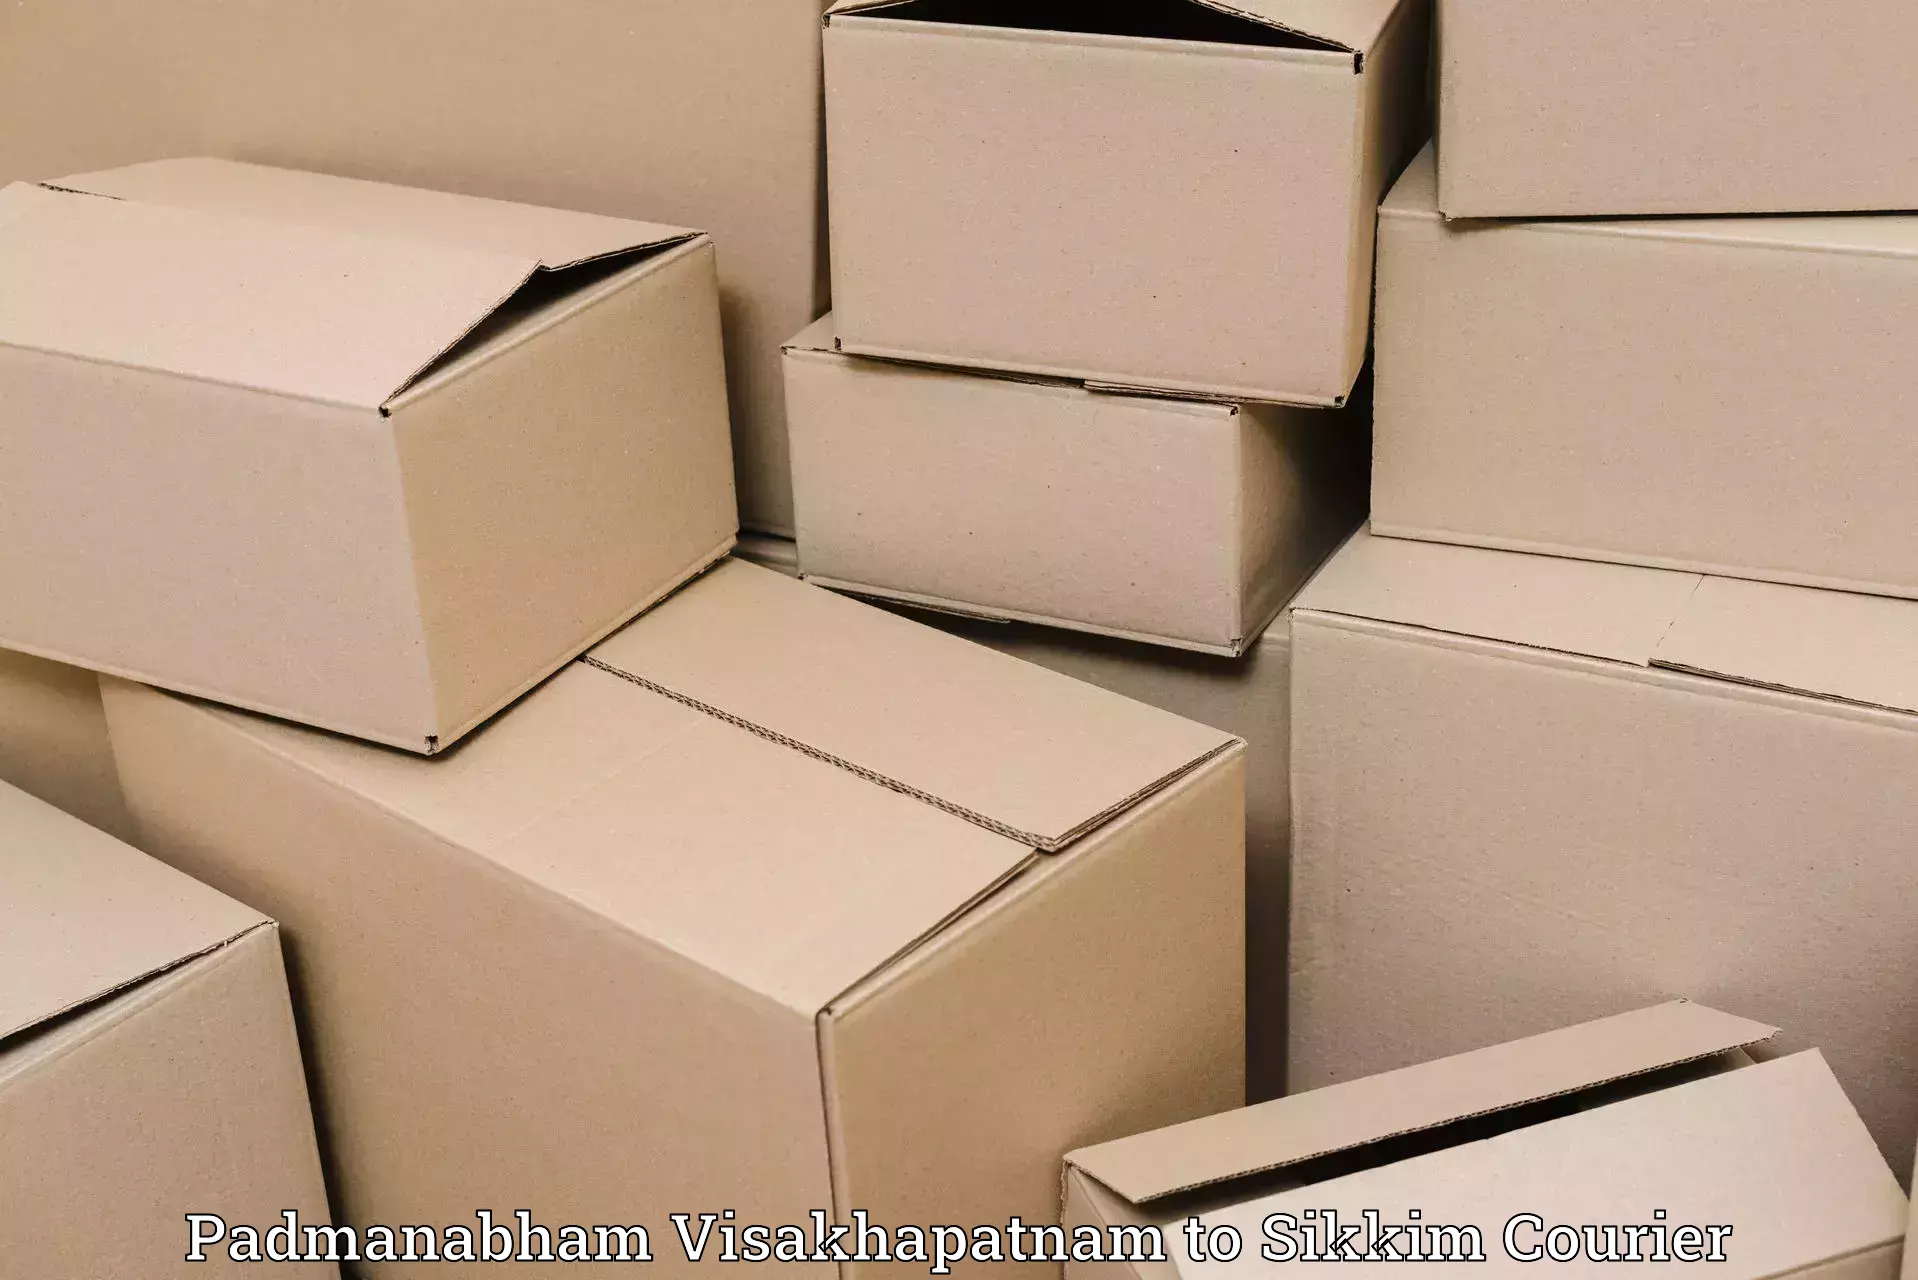 Efficient logistics management Padmanabham Visakhapatnam to Pelling